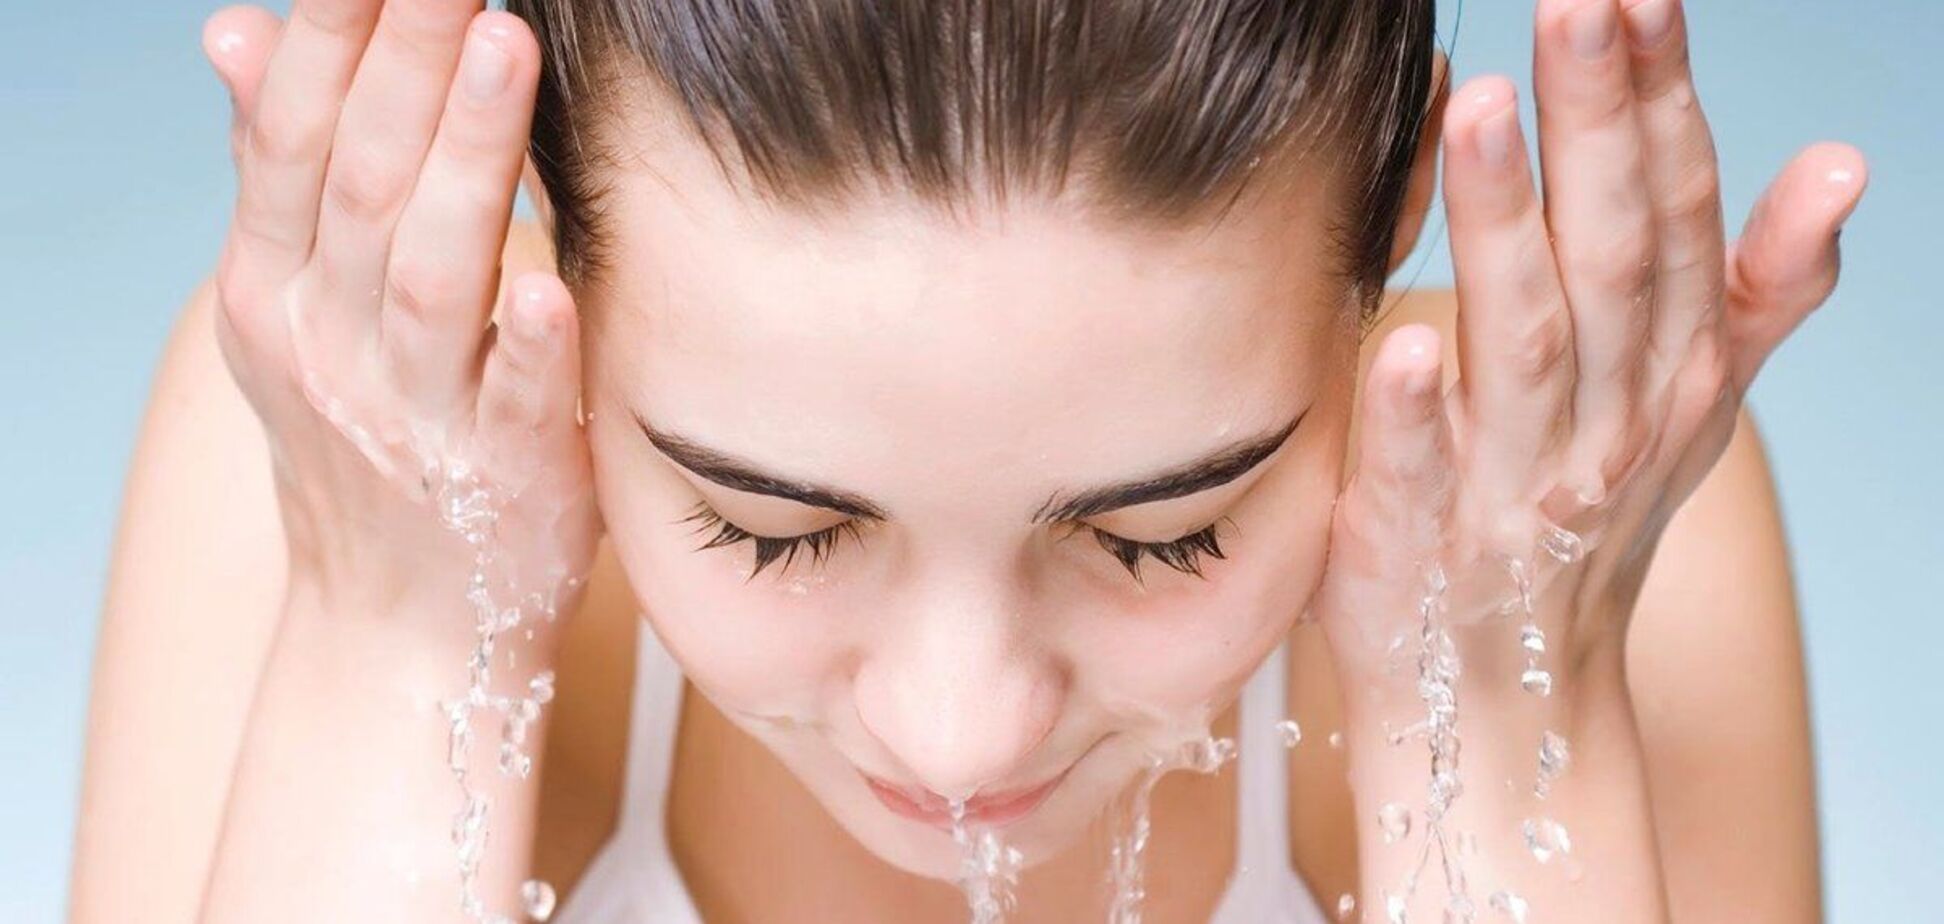 Експерти не рекомендують користуватися милом для очищення обличчя